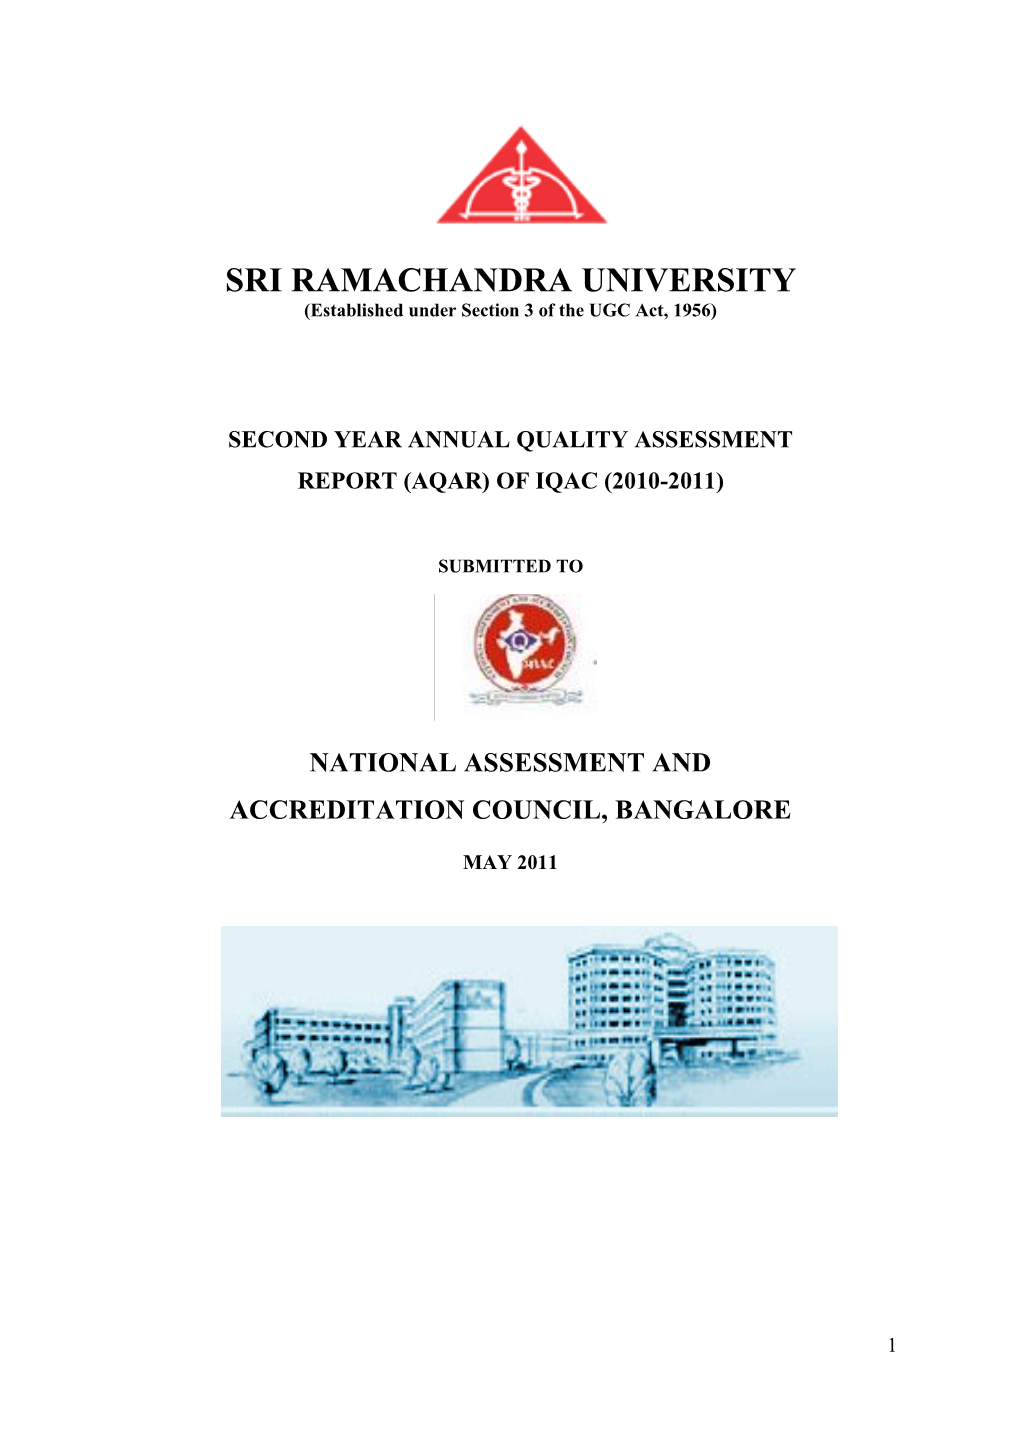 SRI RAMACHANDRA UNIVERSITY (Established Under Section 3 of the UGC Act, 1956)